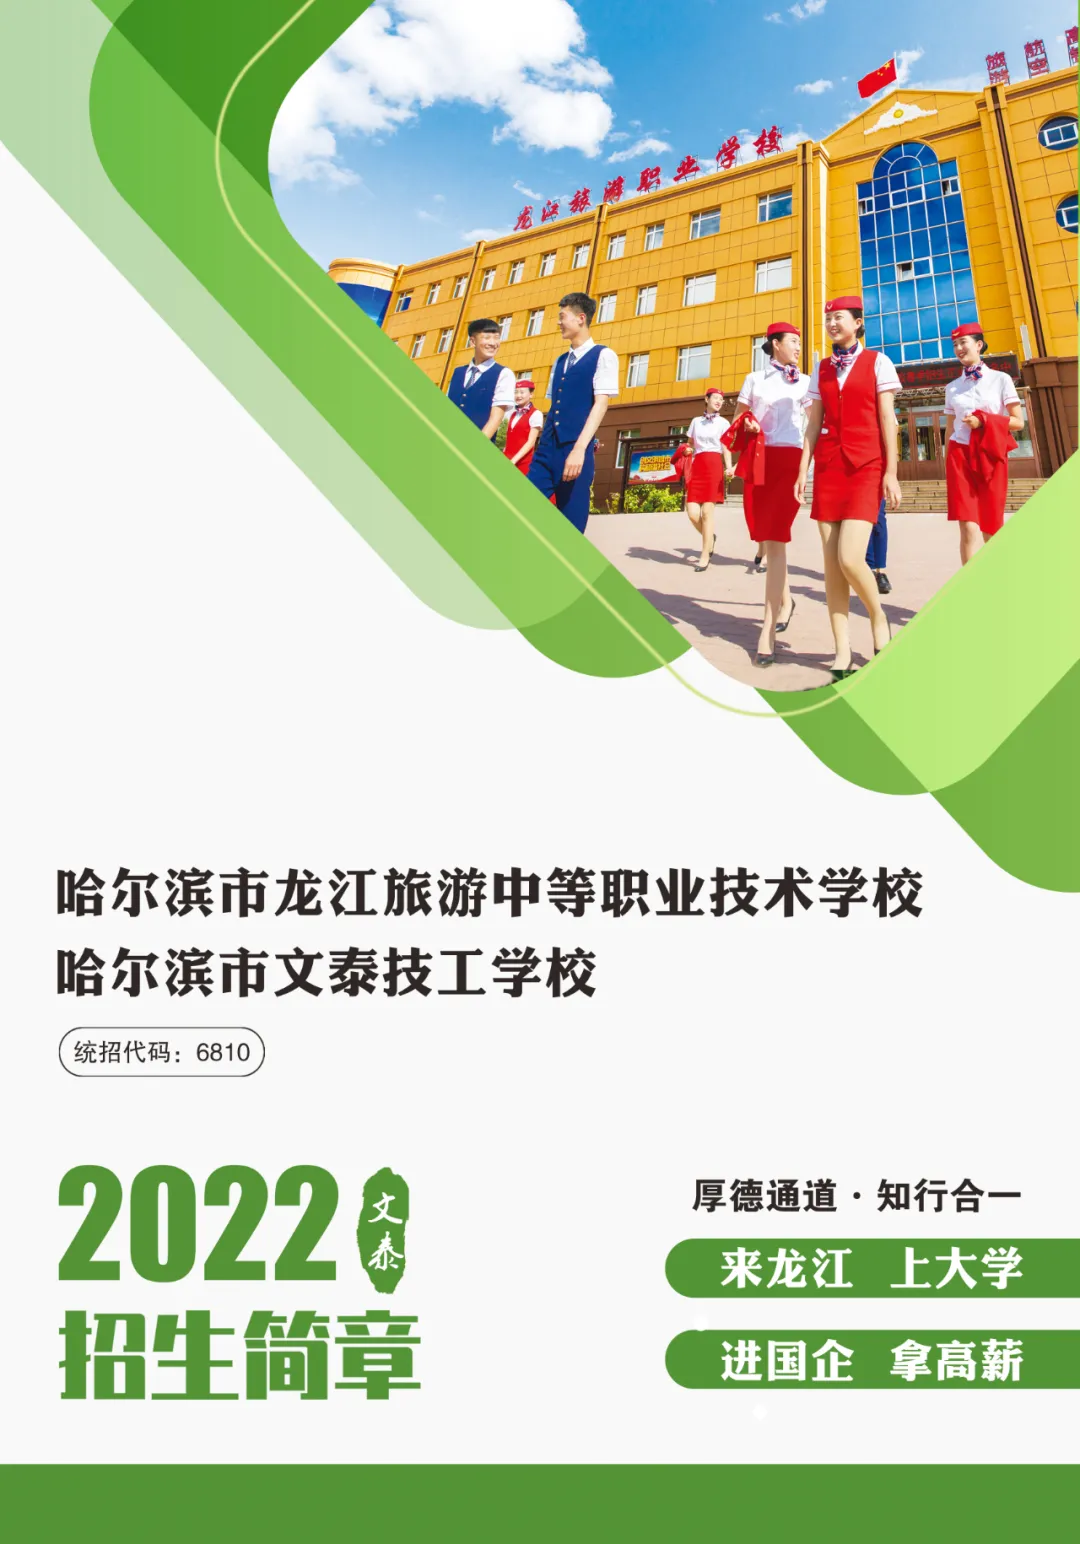 哈尔滨市龙江旅游中等职业技术学校2022年招生简章